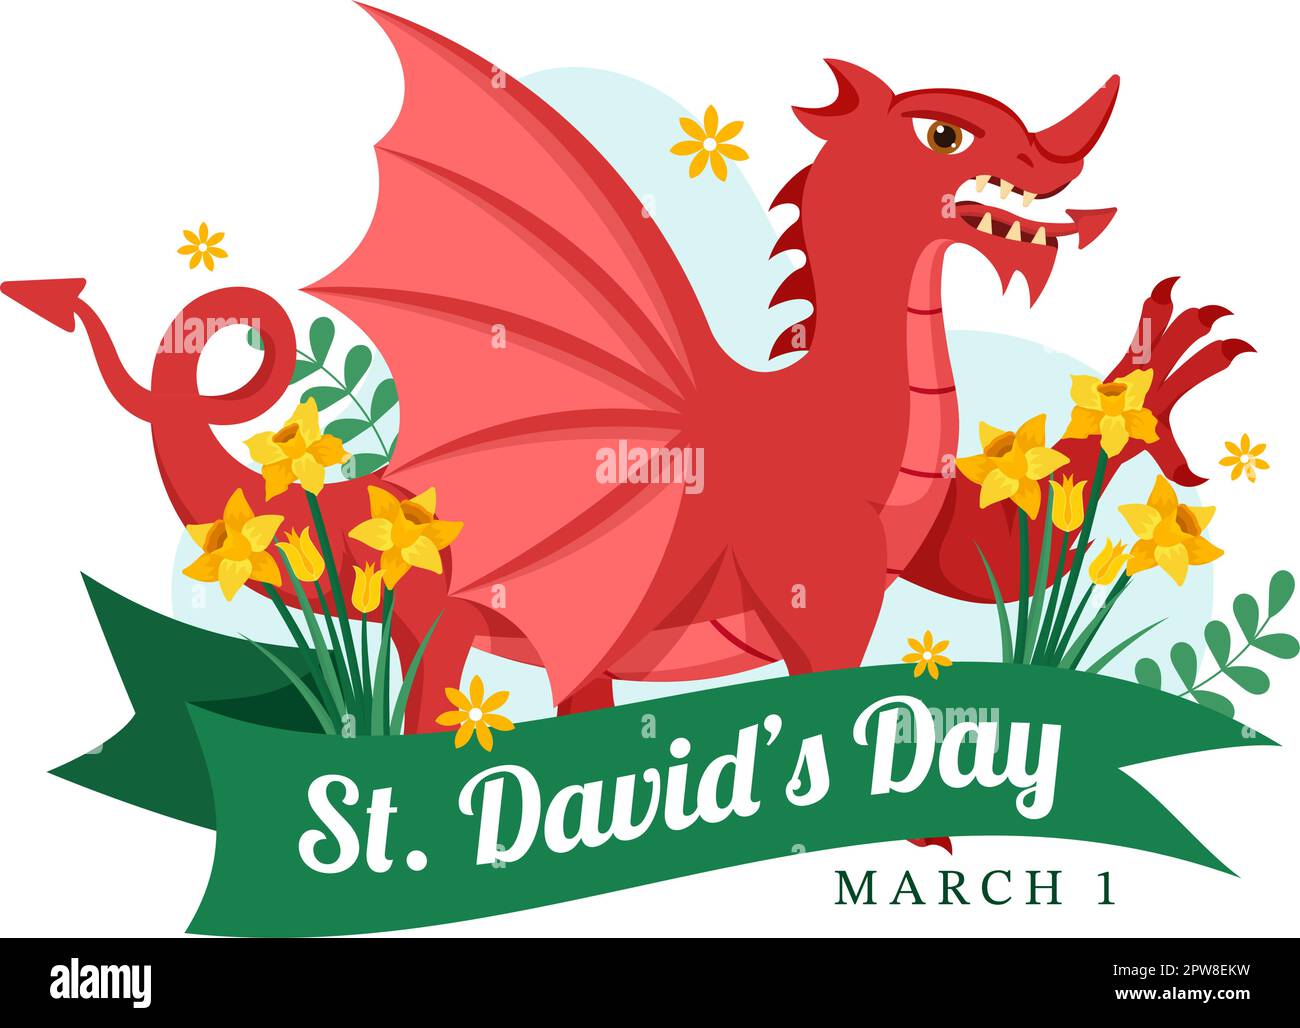 Bonne Saint-David sur l'illustration 1 mars avec Dragons gallois et jonquilles jaunes pour la page d'arrivée dans des modèles dessinés à la main de dessin animé à plat Illustration de Vecteur